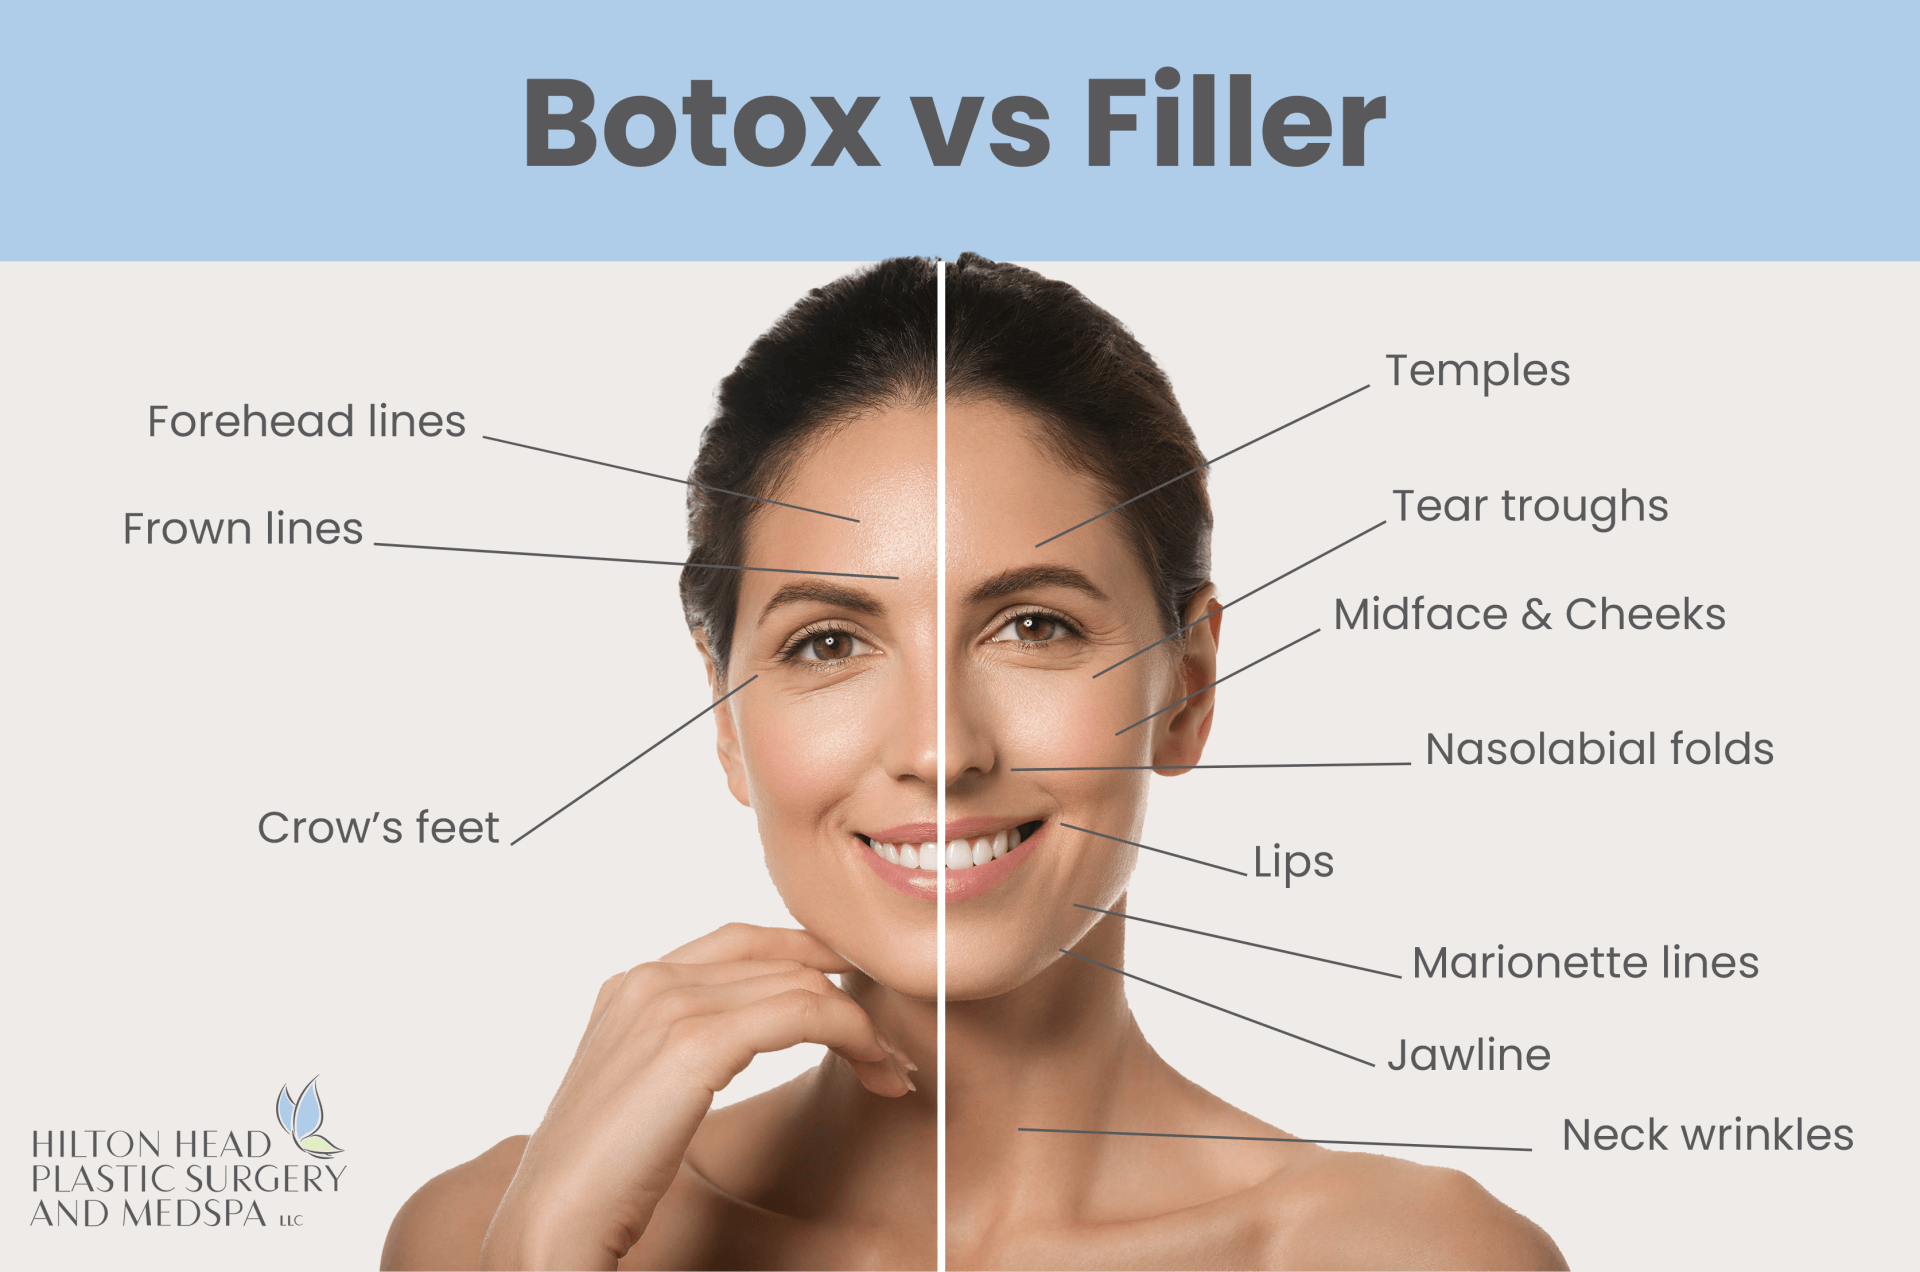 Botox treatments